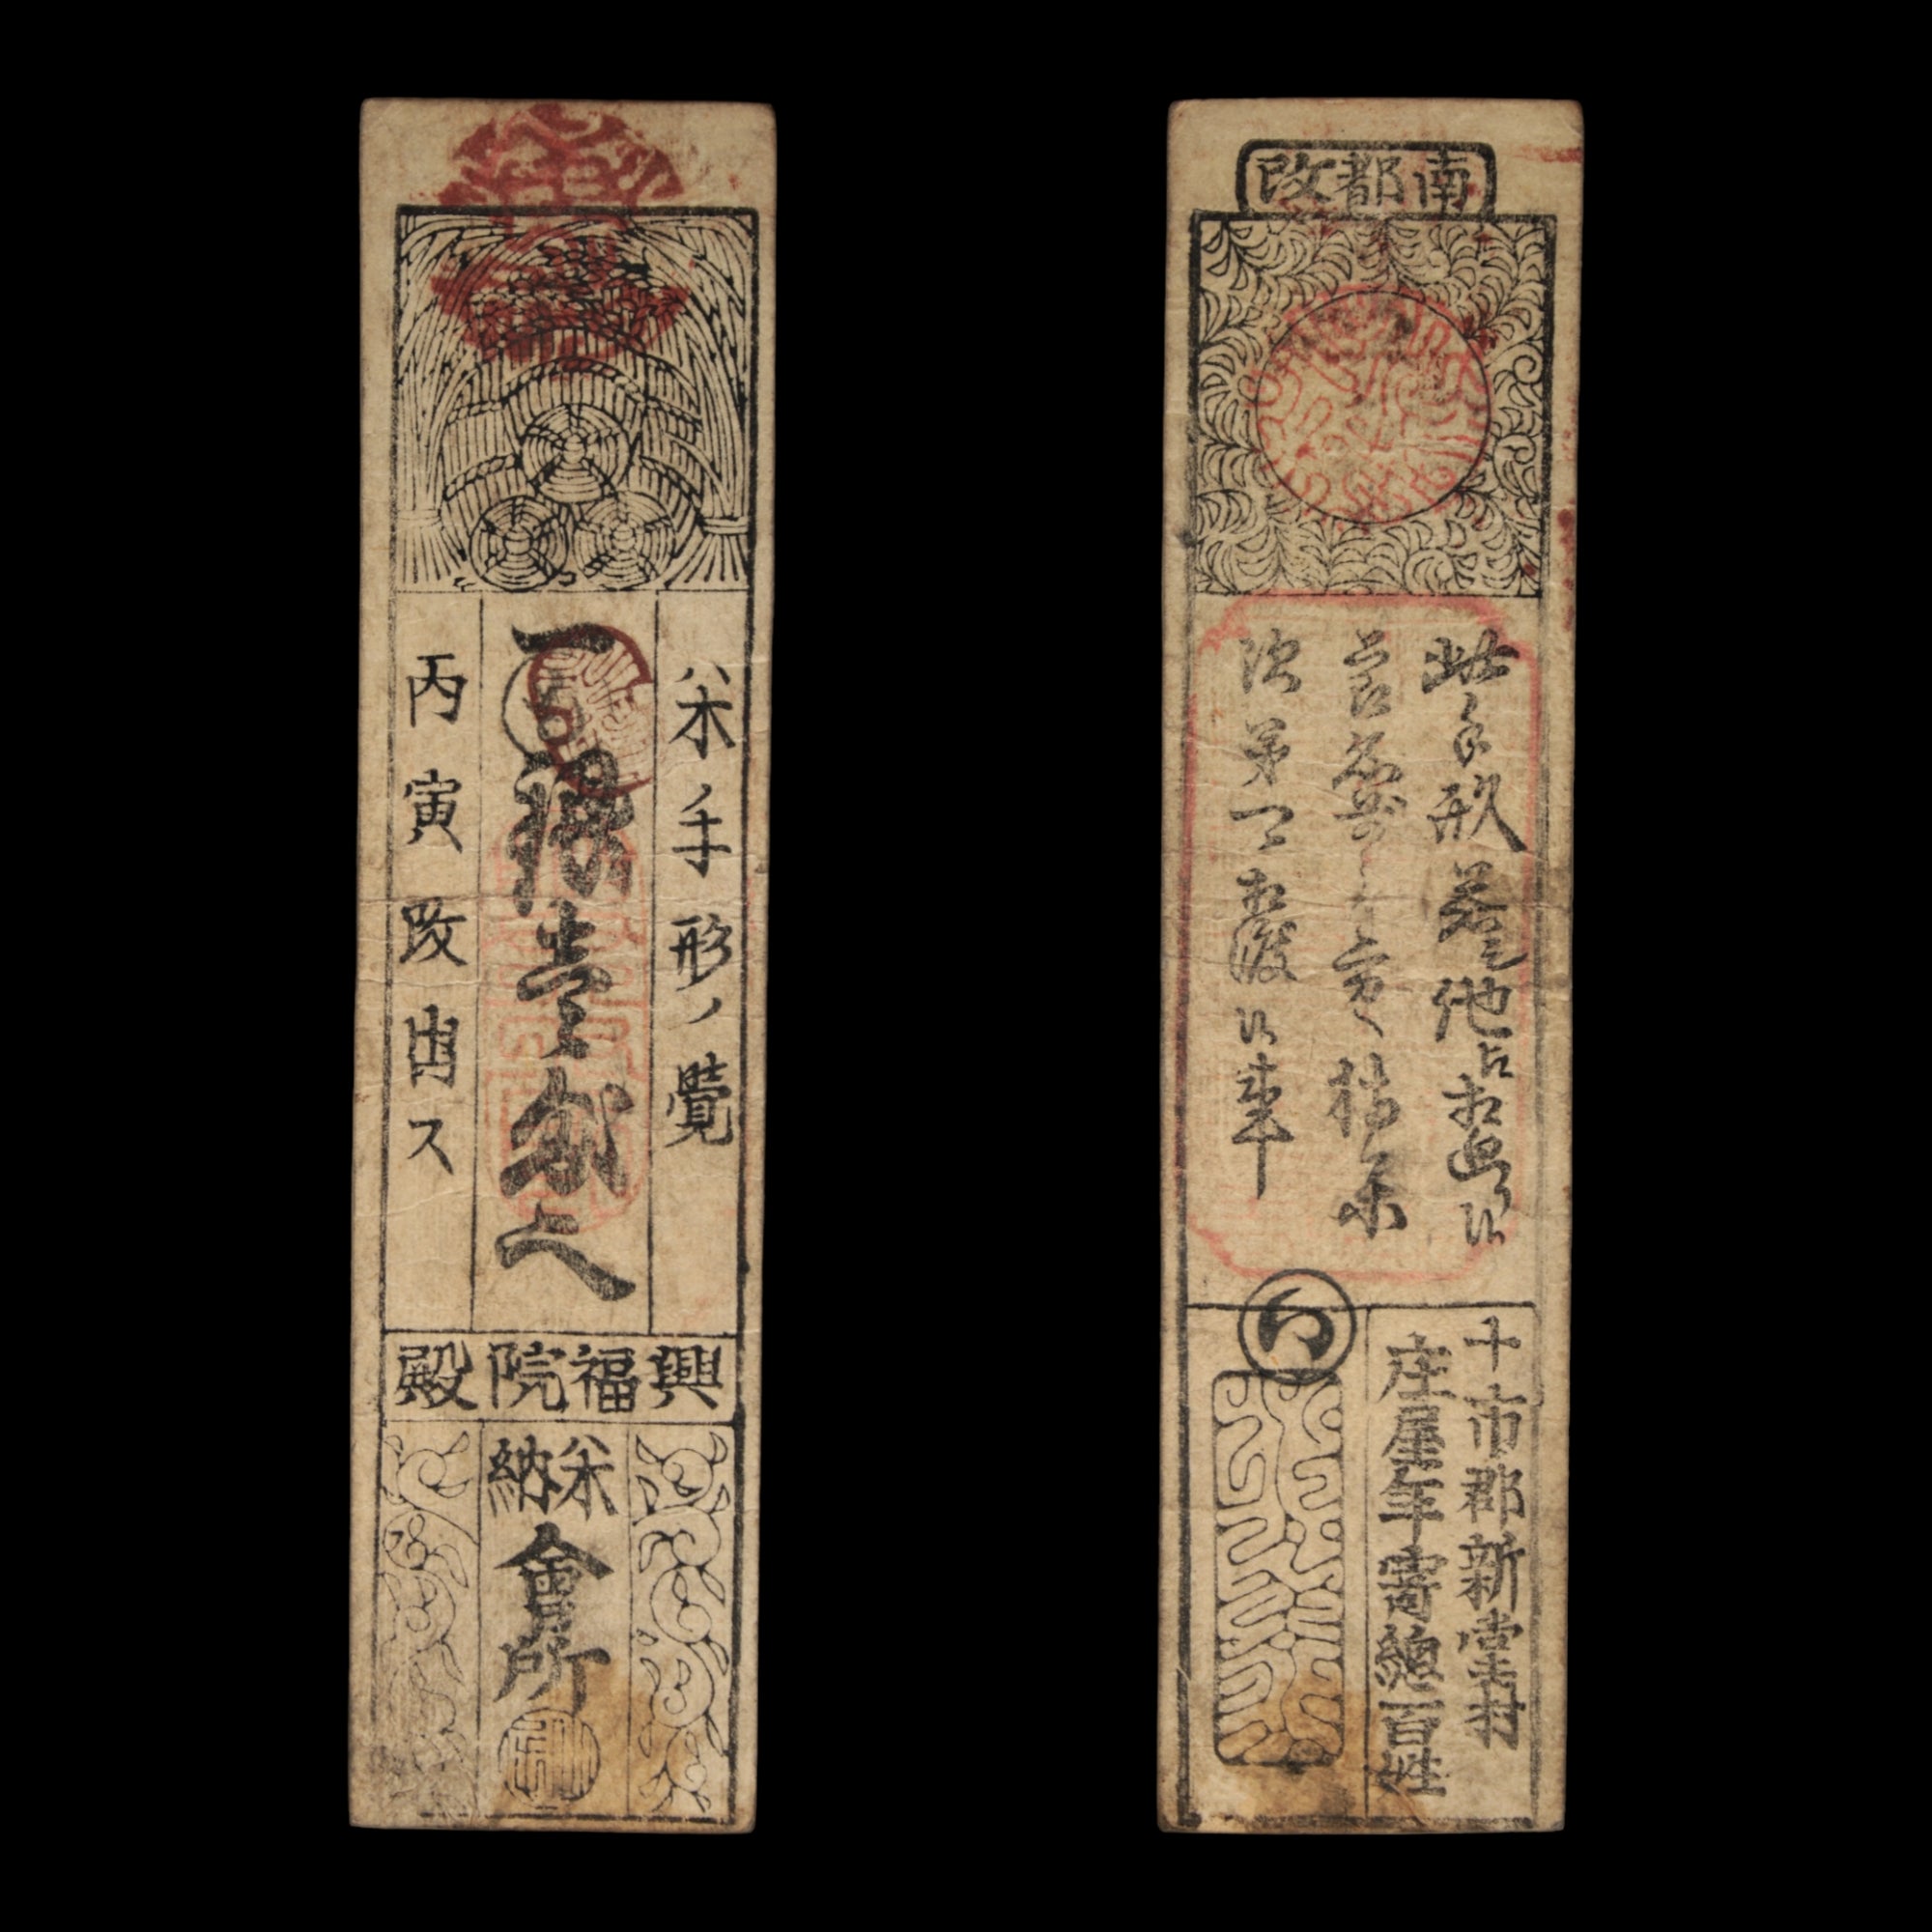 Hansatsu, Silver 1 Monme, Rice Bales - Keio 2 (1866) - Edo Japan - 4/12/23 Auction